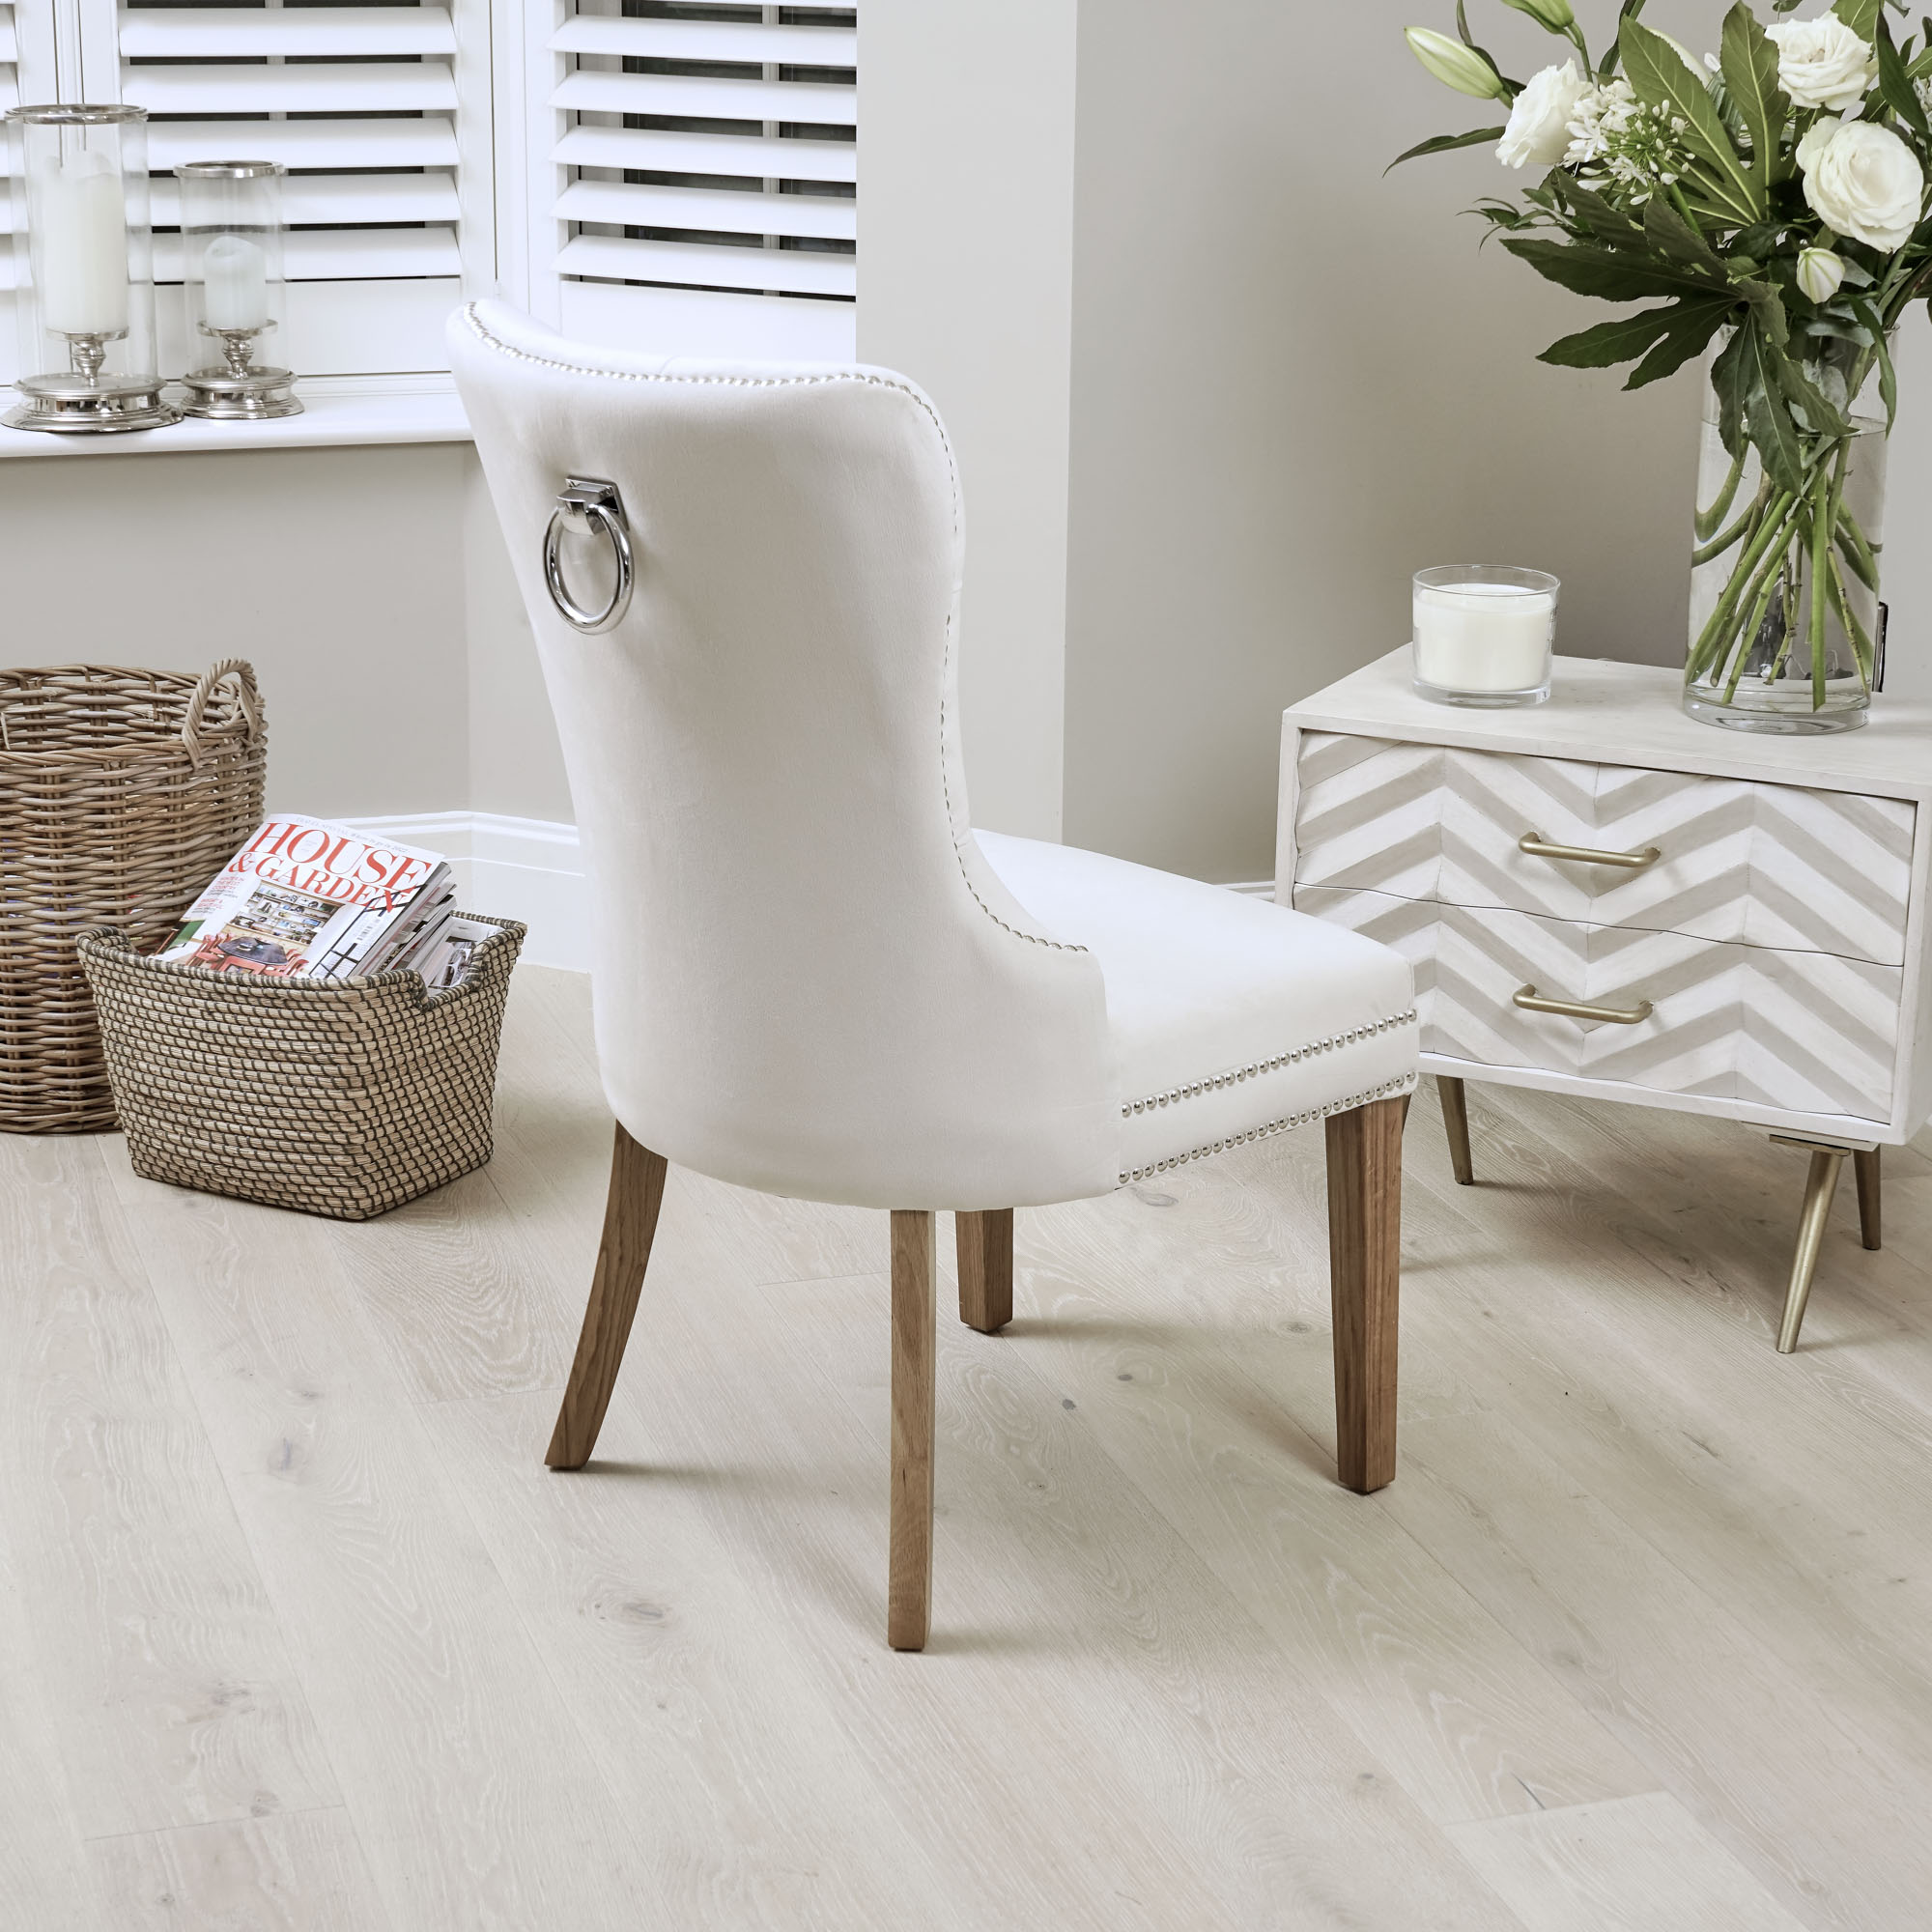 Hale Cream Brushed Velvet Studded & Hoop Dining Chair – Oak Legs